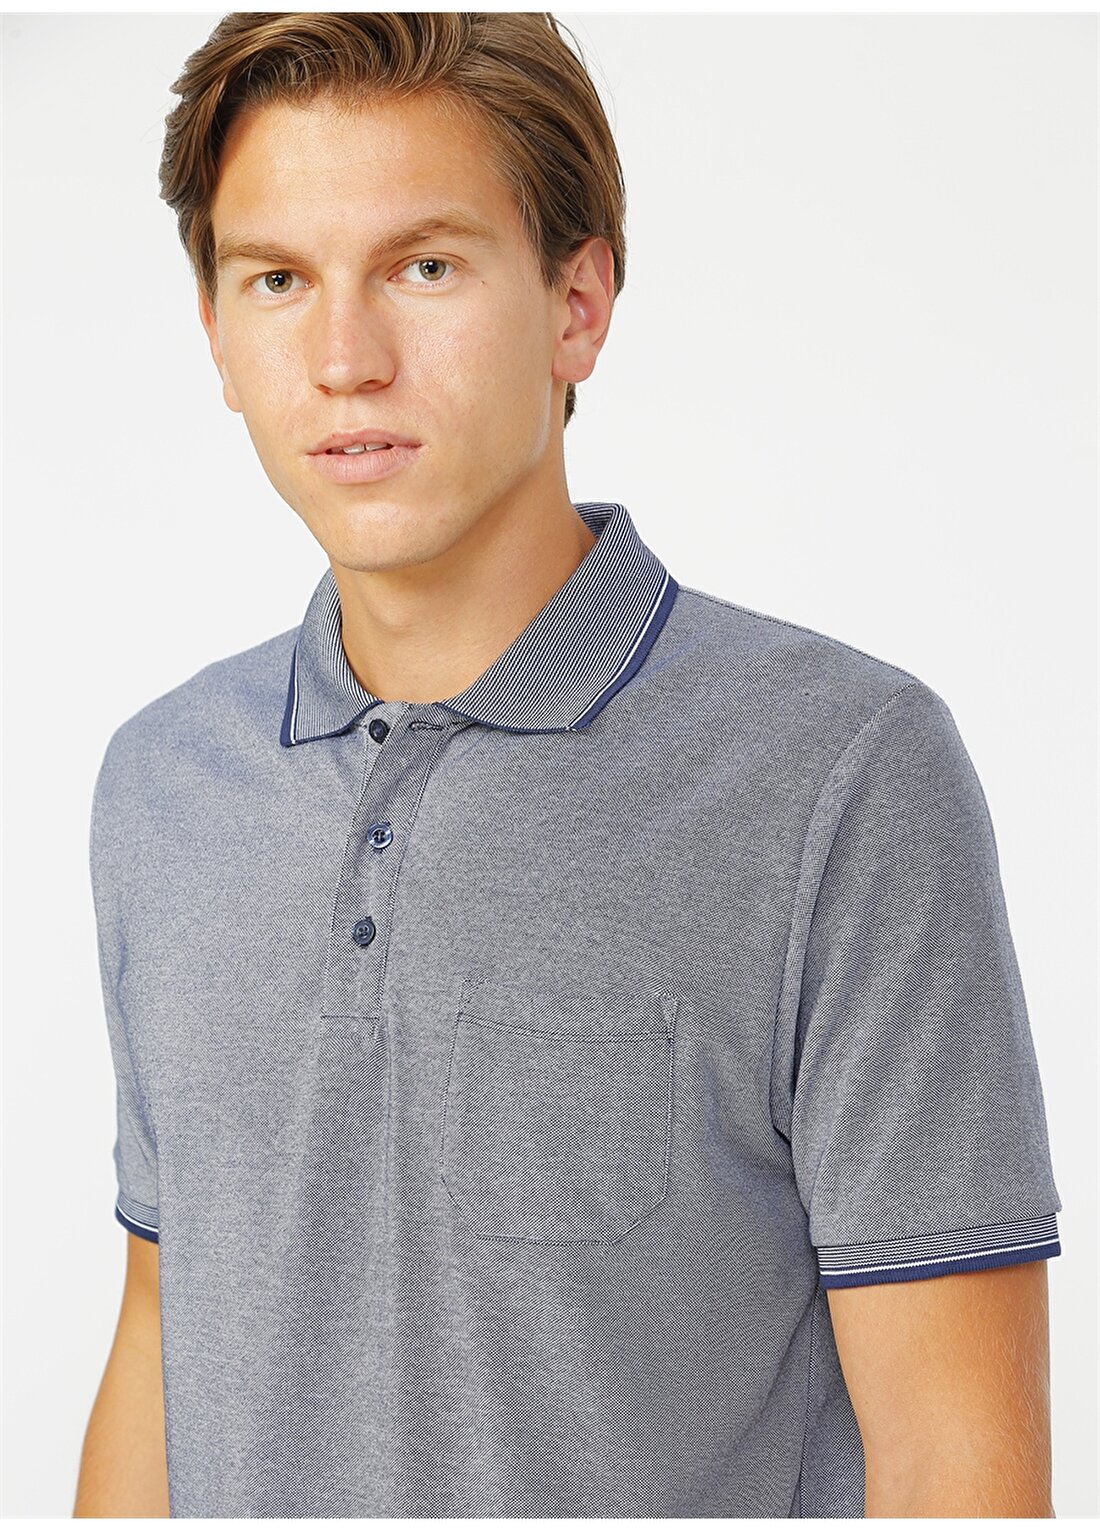 Altınyıldız Classics Düz Lacivert Erkek Polo T-Shirt 4A4820200004